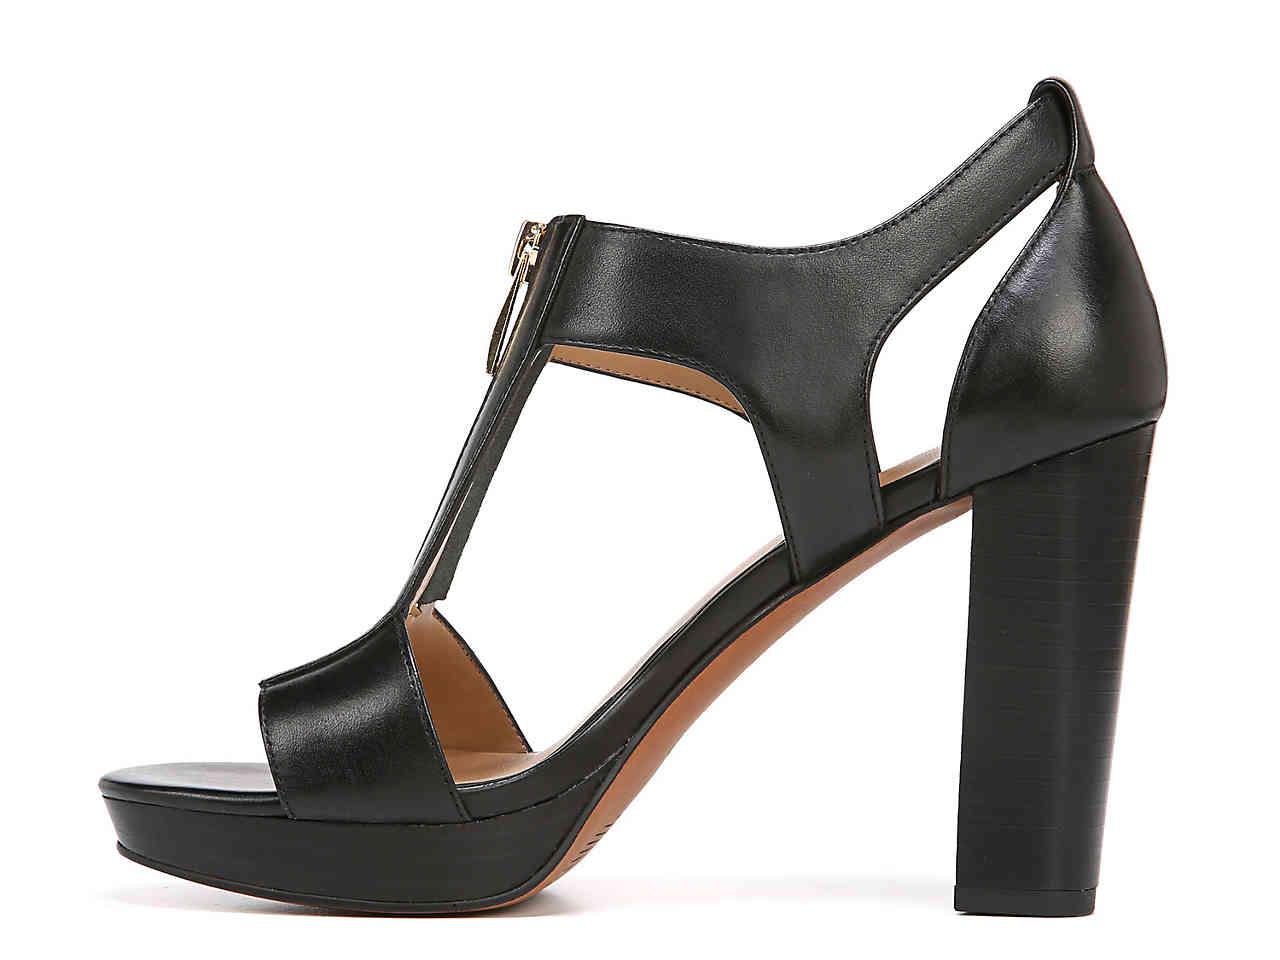 Franco Sarto Myriad Platform Sandal in Black - Lyst